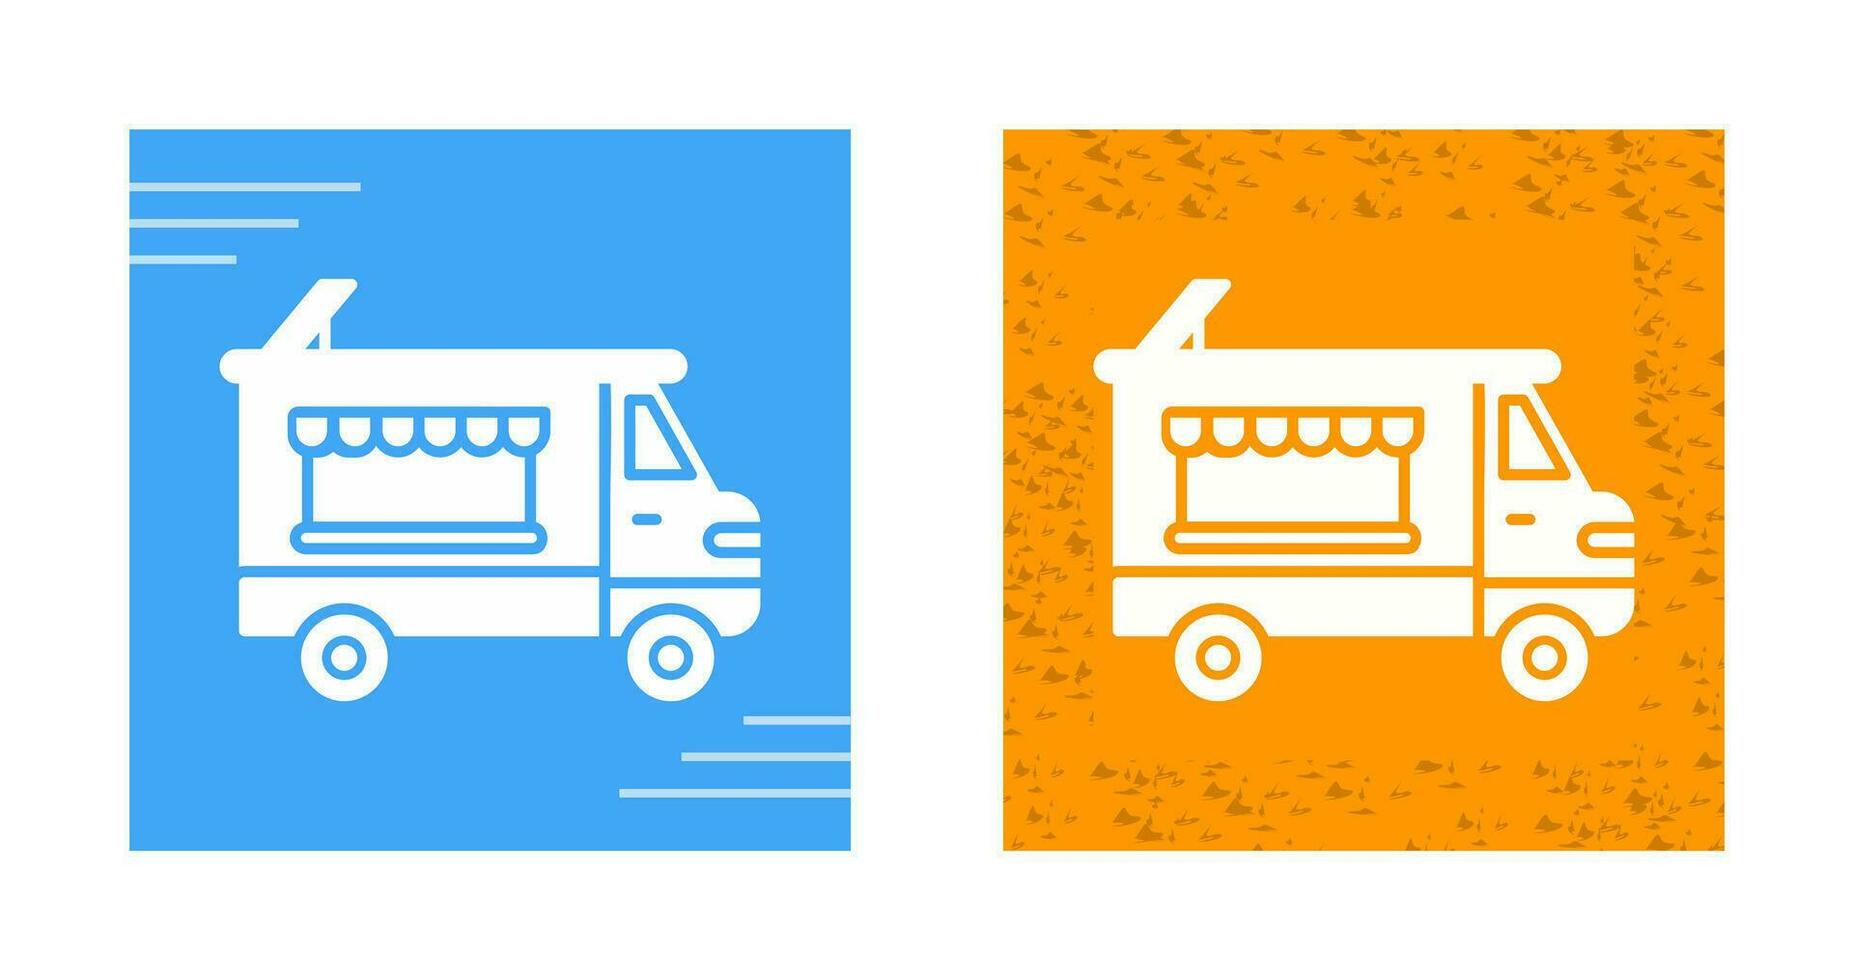 ícone de vetor de caminhão de padaria